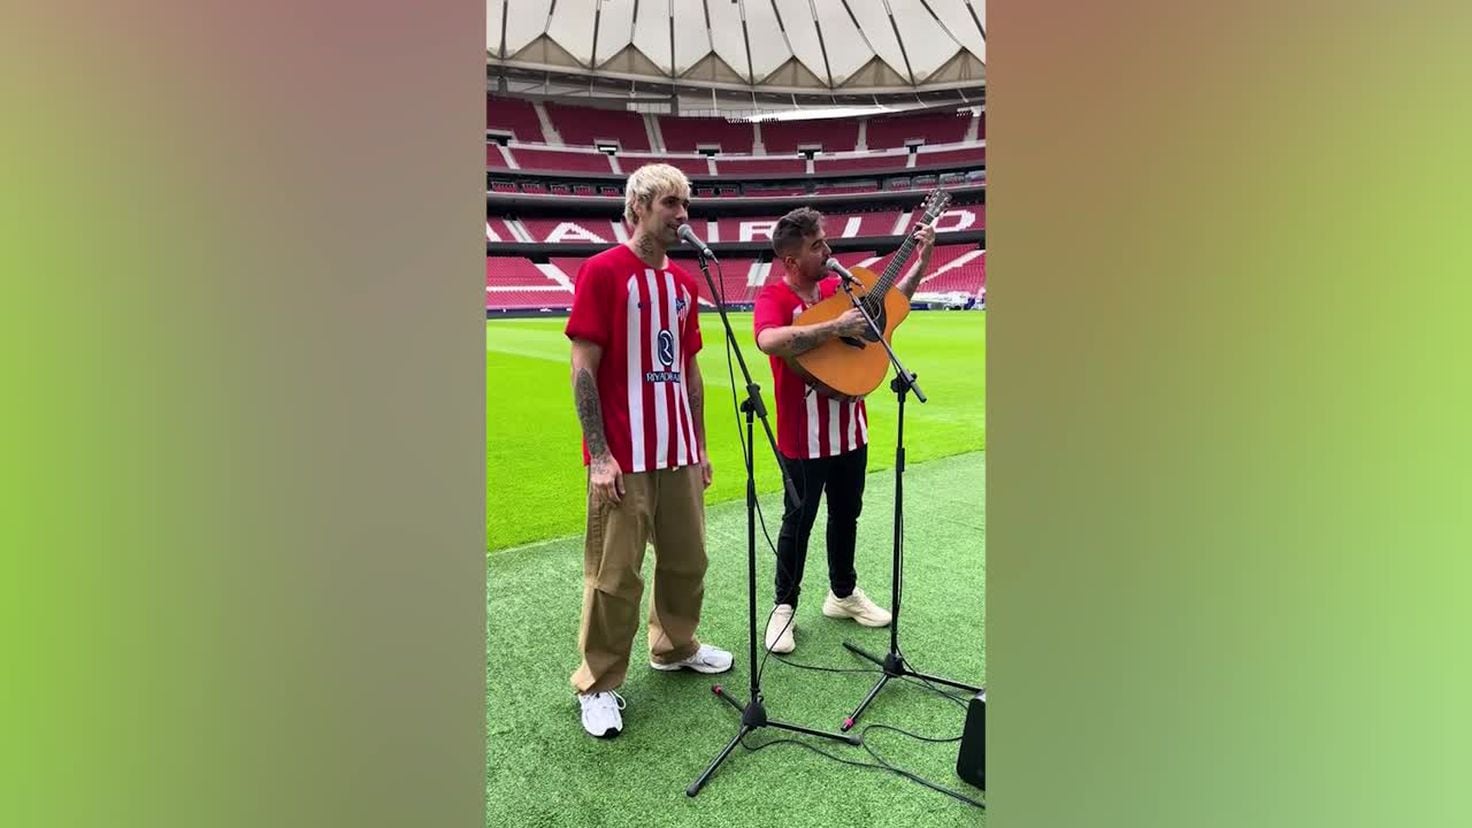 Beret y Mr. Rain estrenan una canción en el Metropolitano con la camiseta  del Atleti - Videos